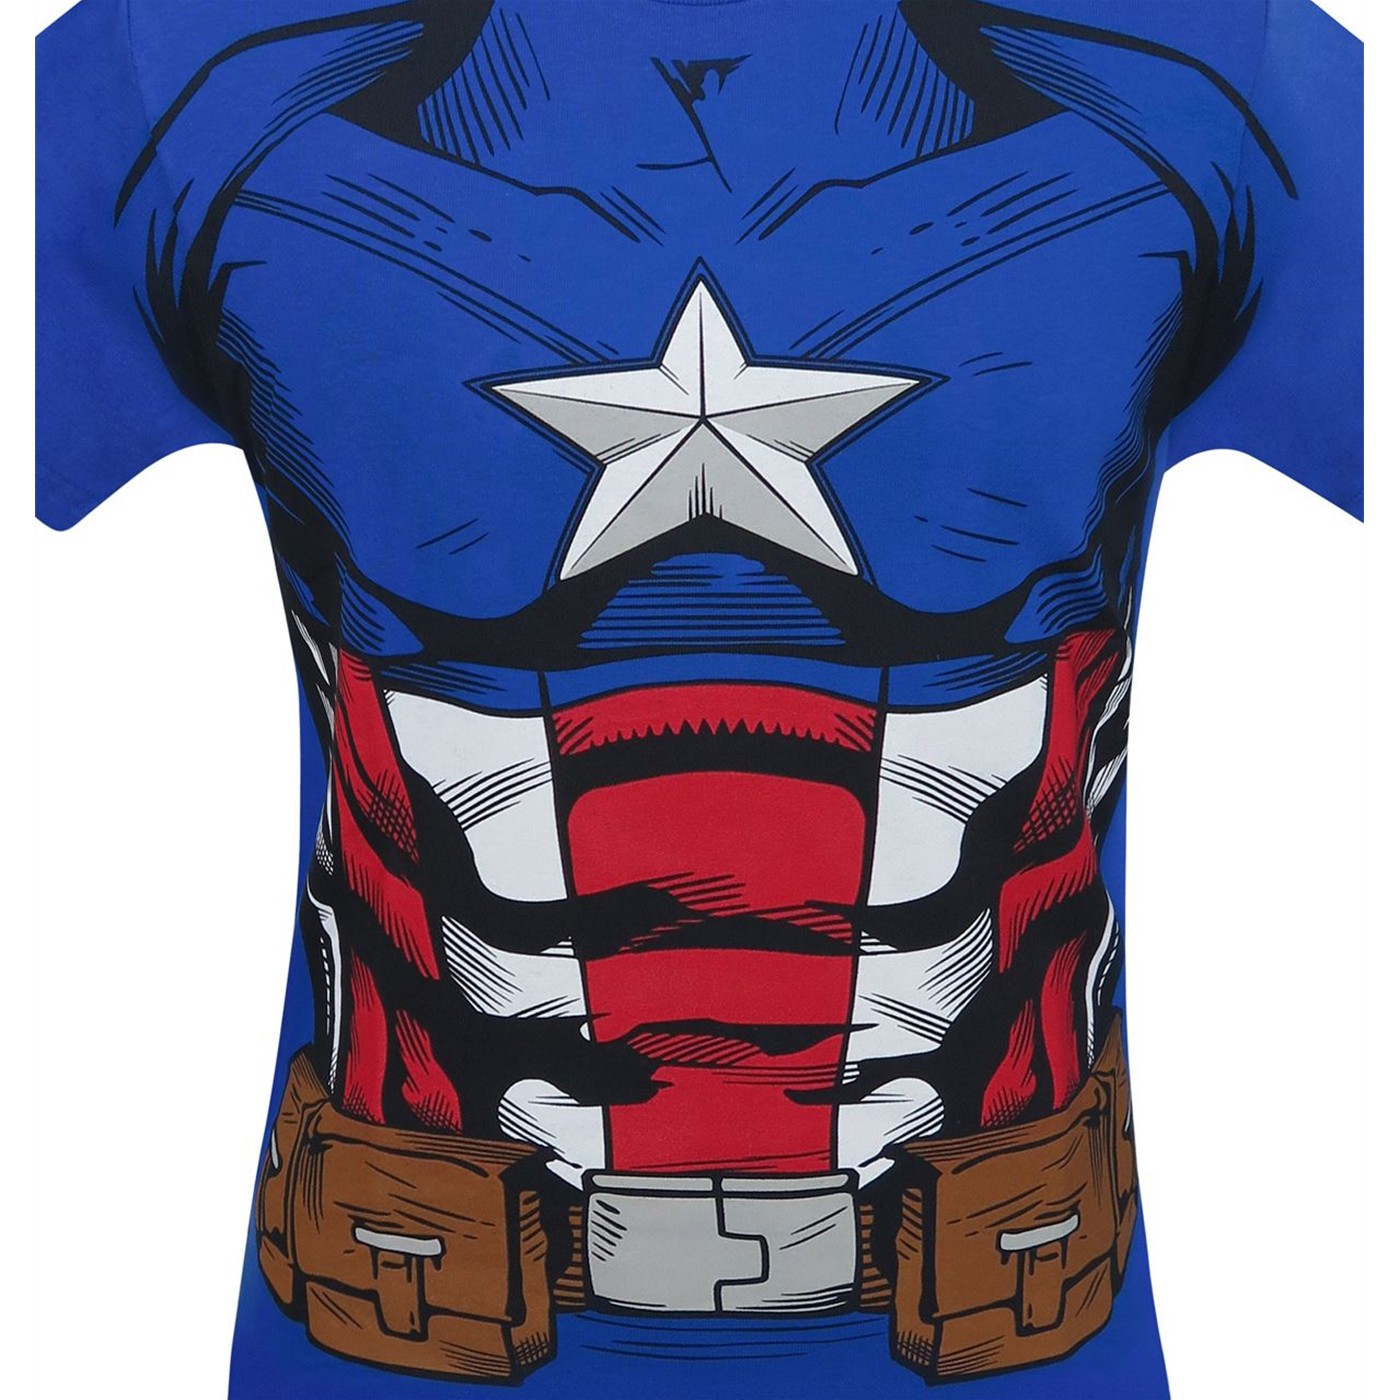 Captain America Suit-Up Men's Costume T-Shirt